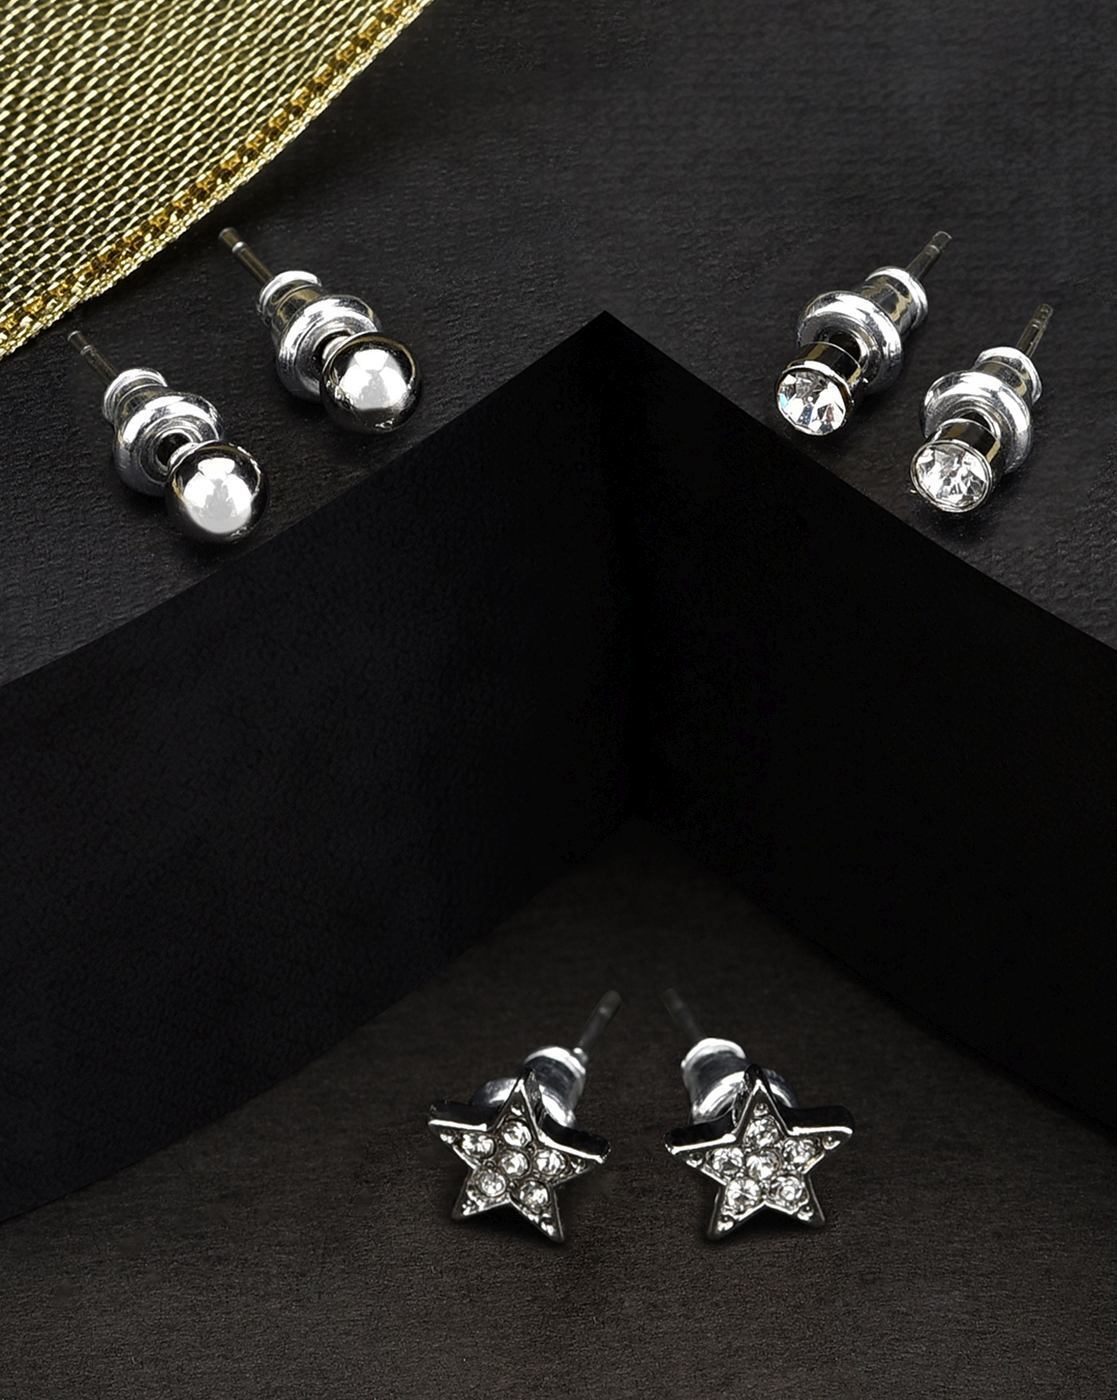 Buy SilverToned  White Earrings for Women by Accessorize London Online   Ajiocom